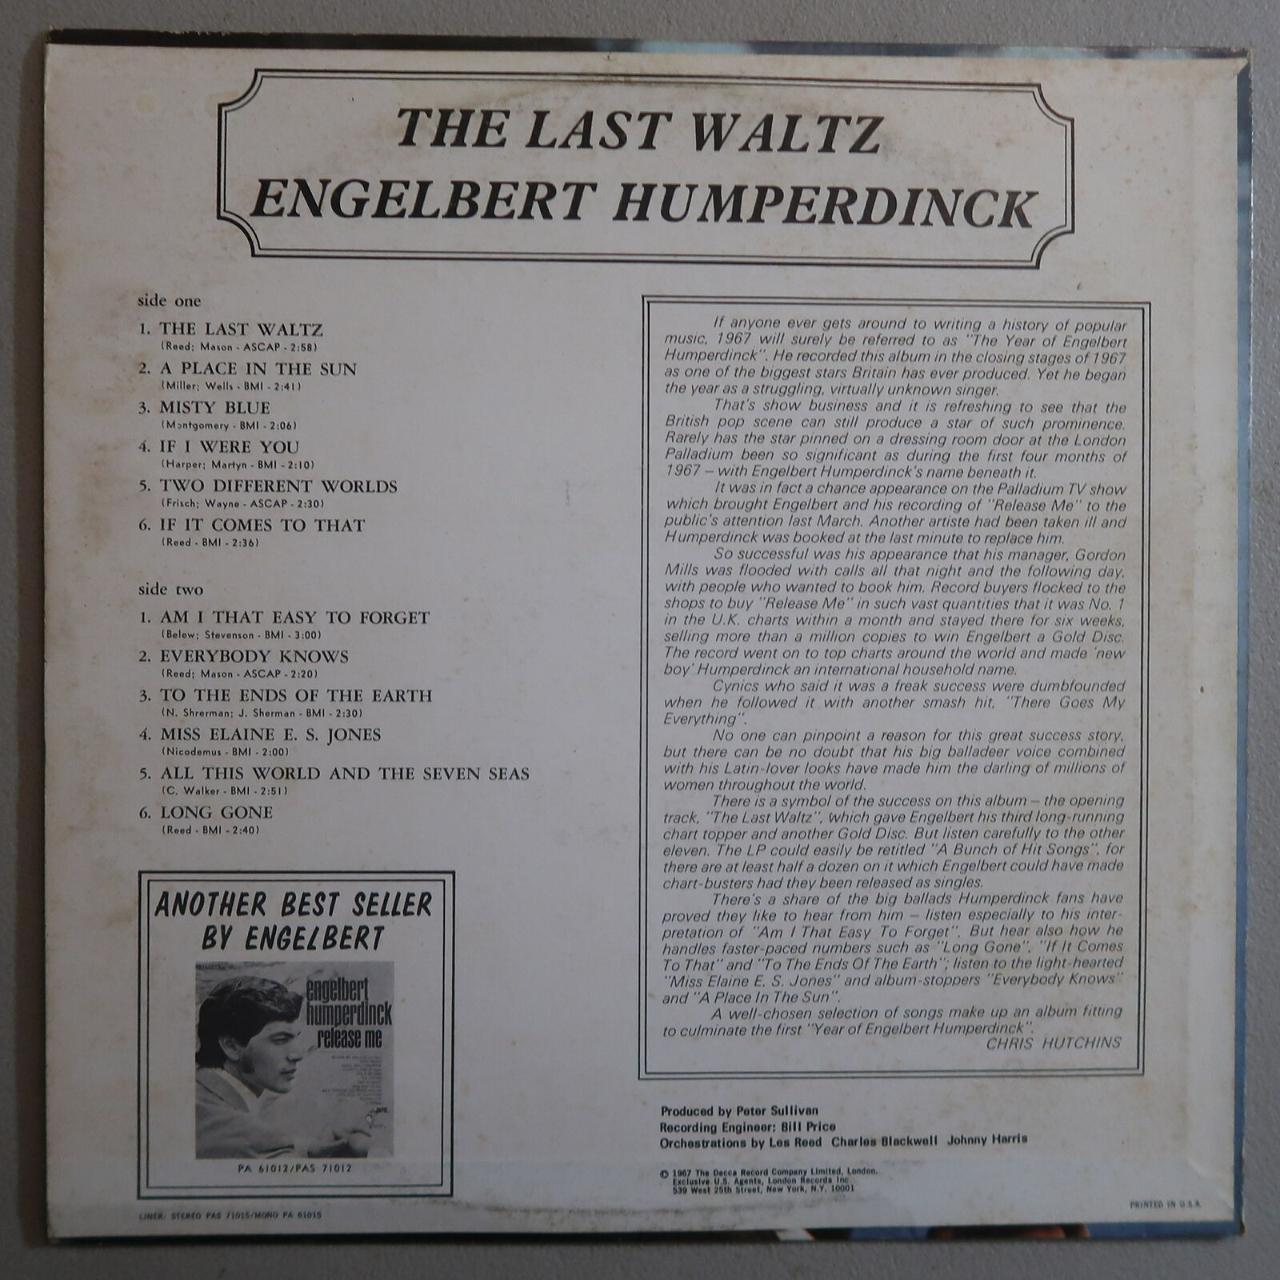 Product Image 2 - ENGELBERT HUMPERDINCK THE LAST WALTZ